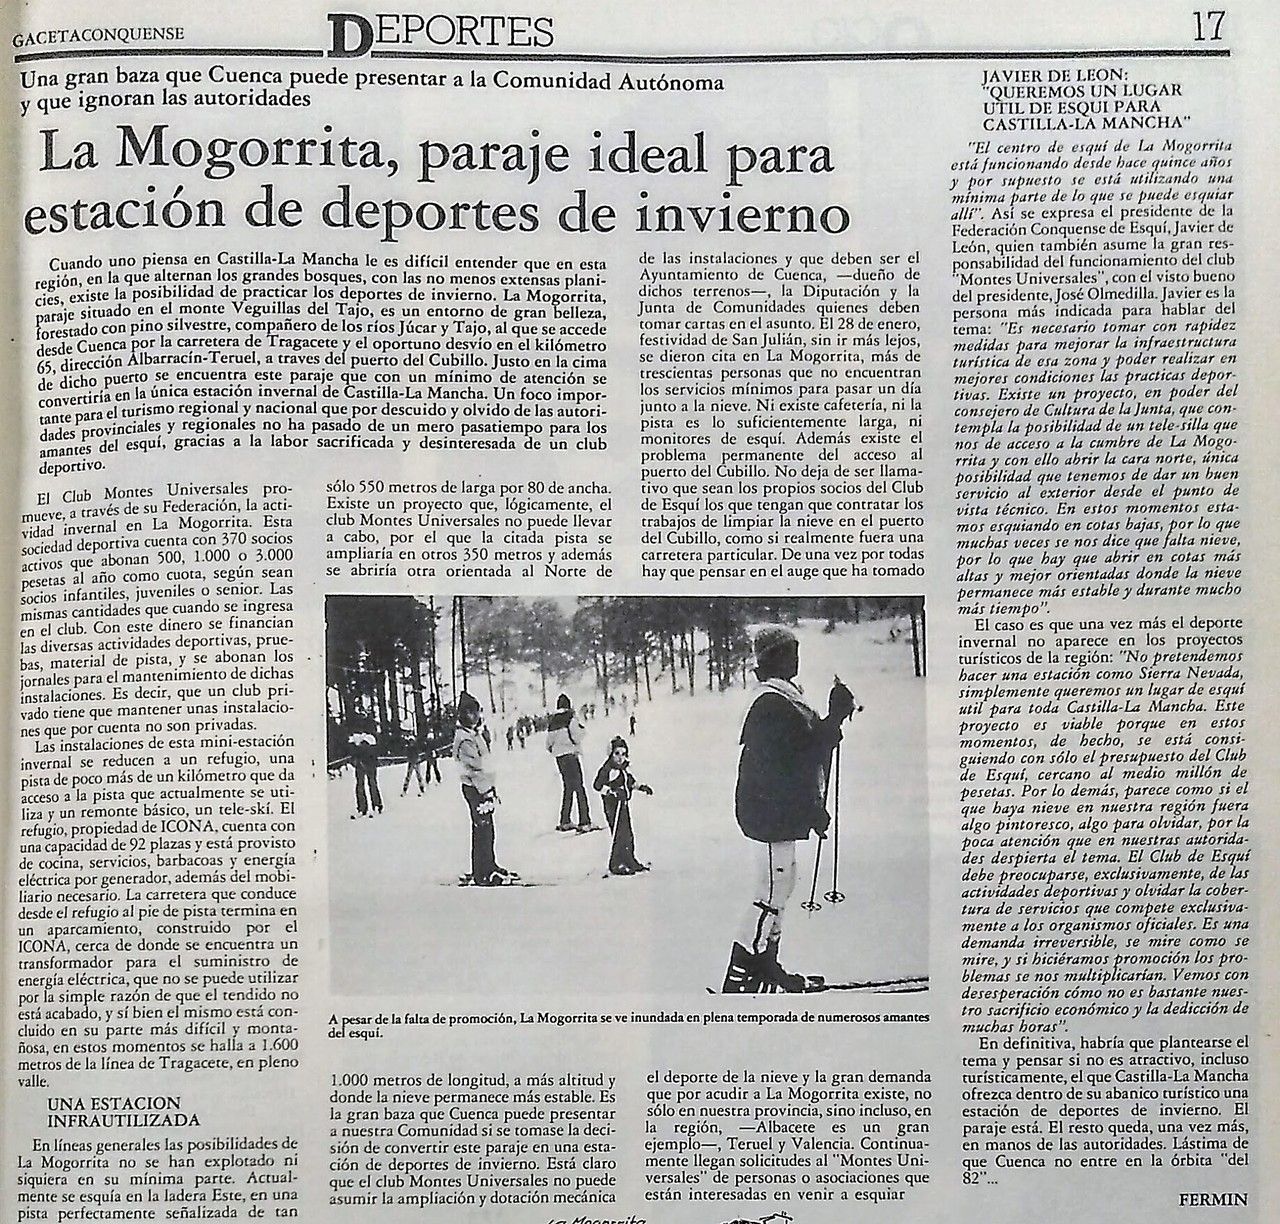 Gaceta Conquense. Febrero 1989.